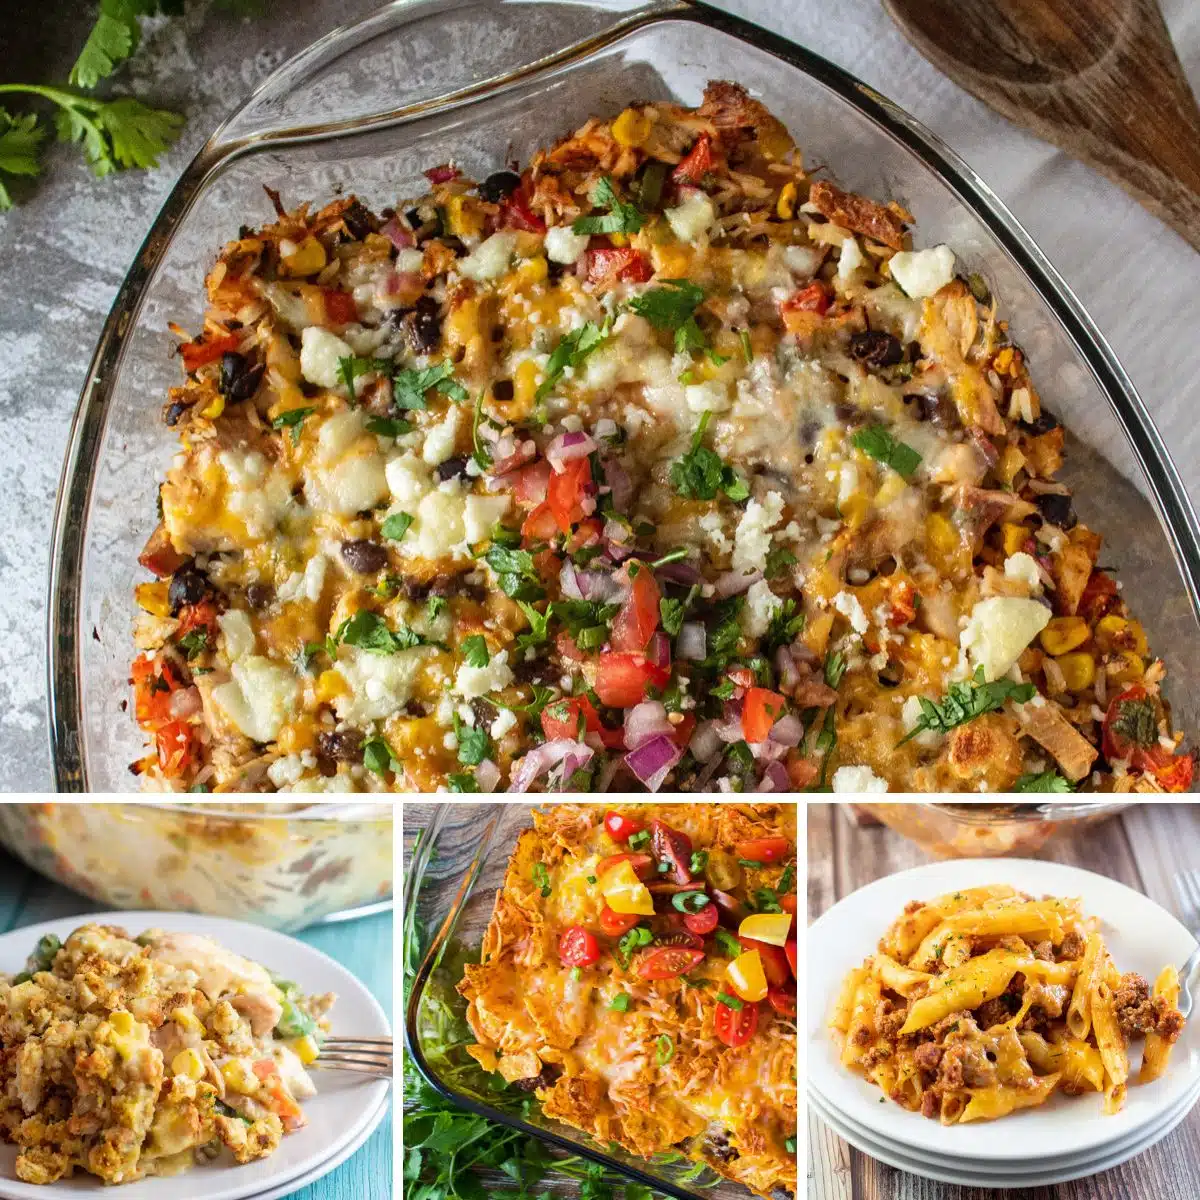 La mejor imagen de collage de recetas de cazuela con 4 recetas sabrosas para preparar cenas familiares.